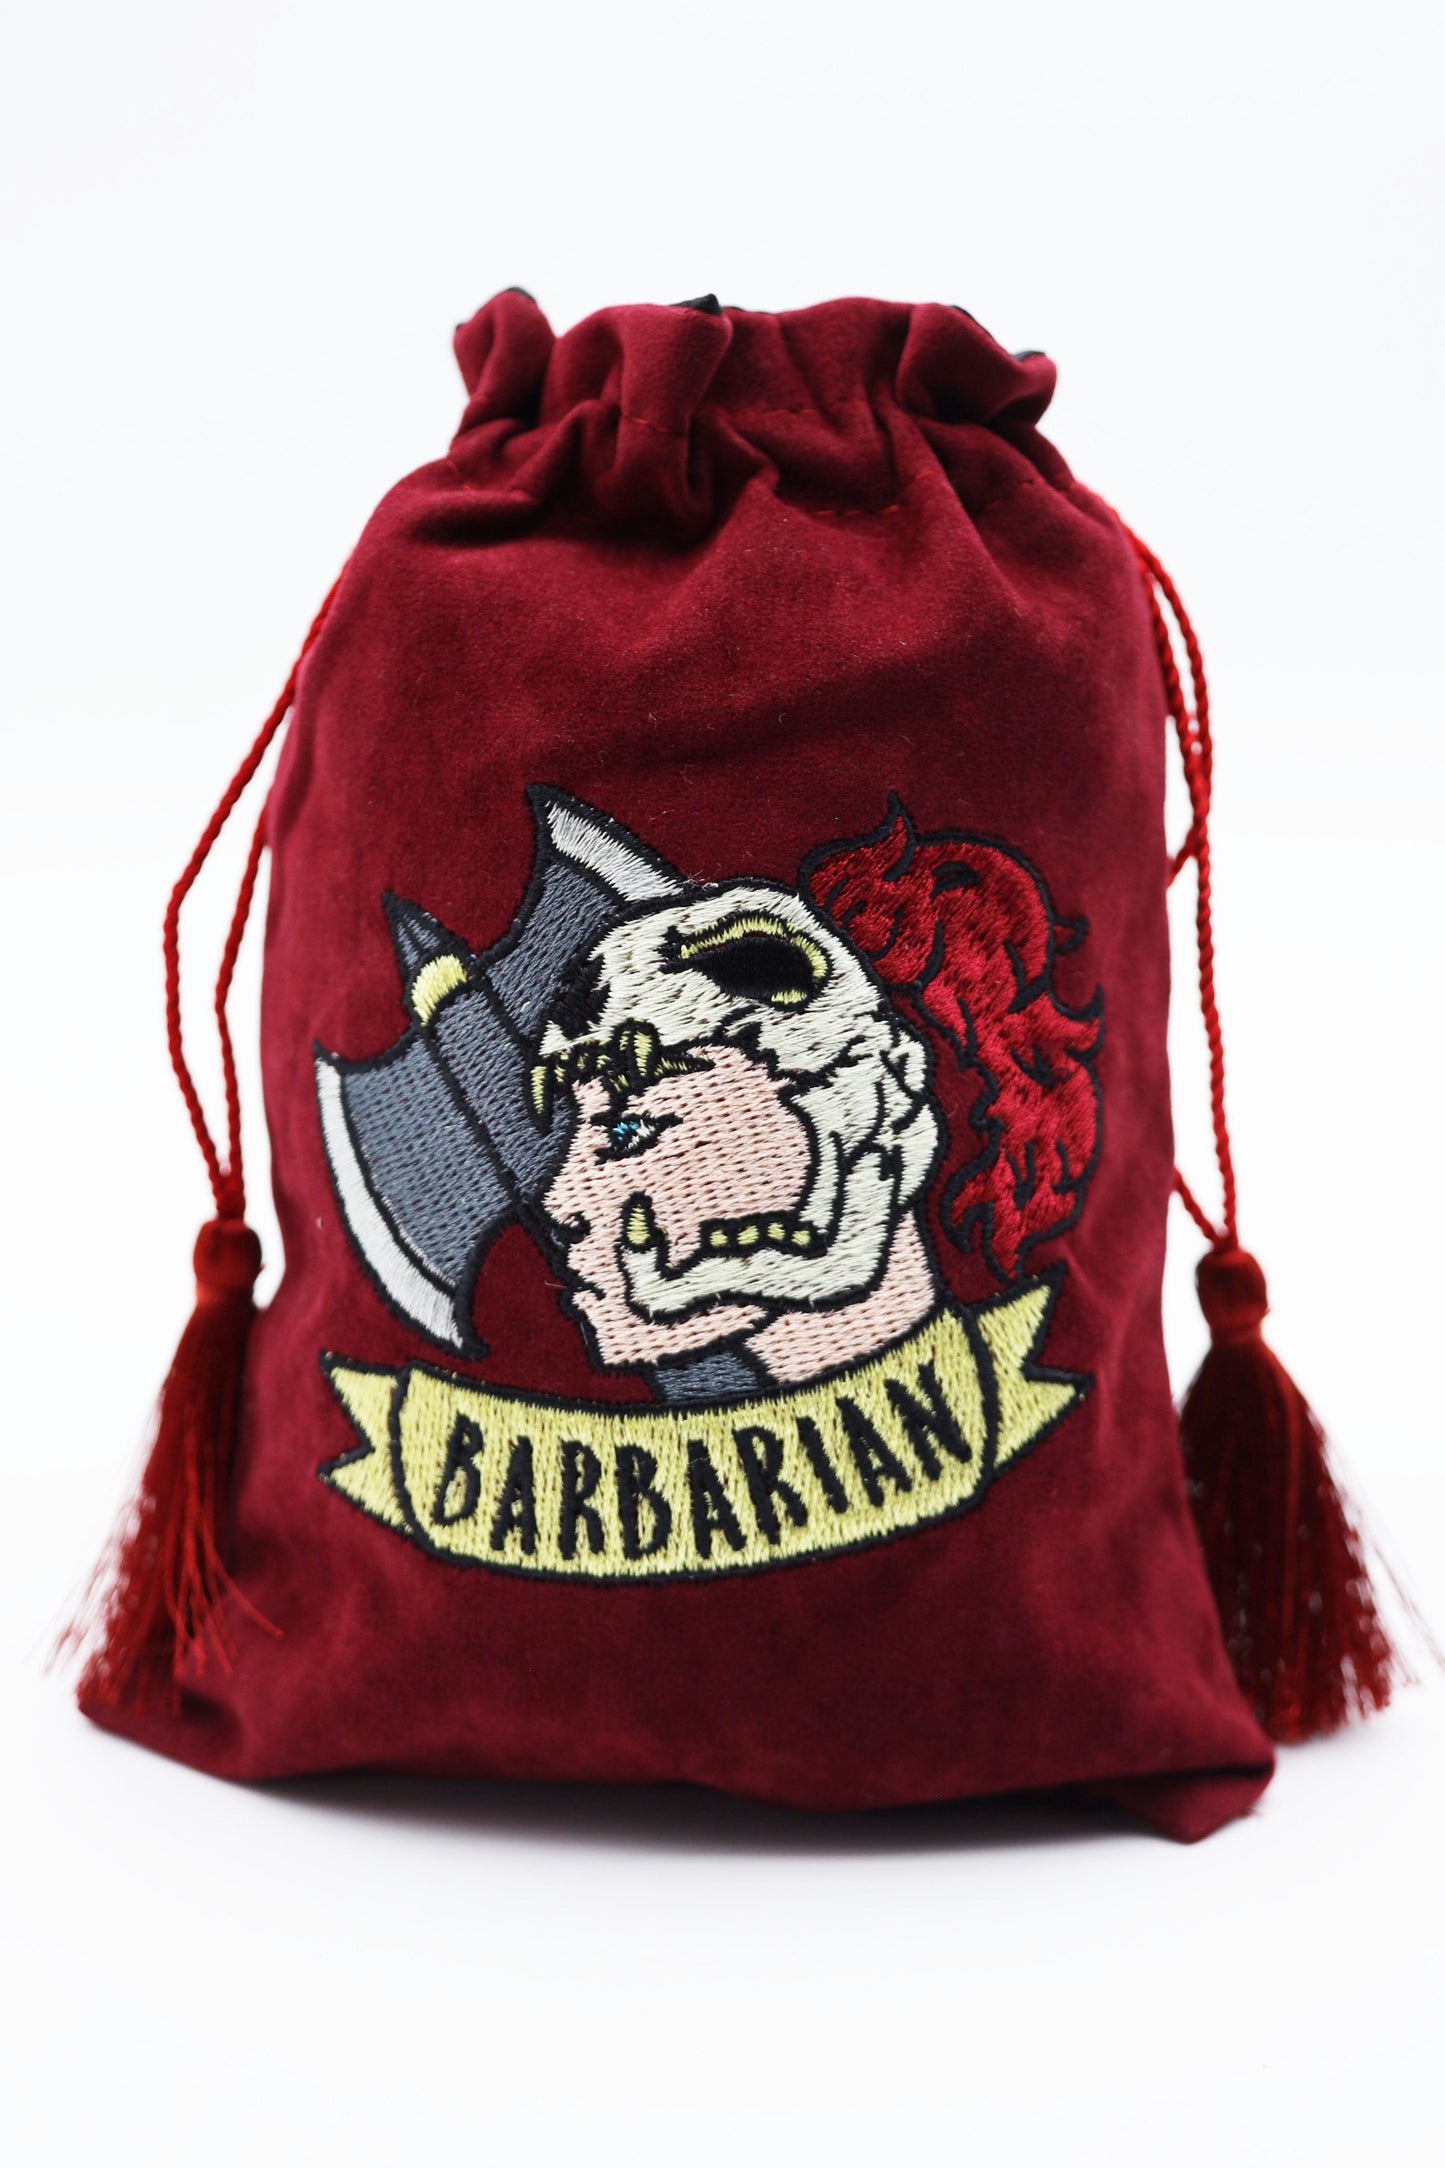 Dice Bag Barbarian